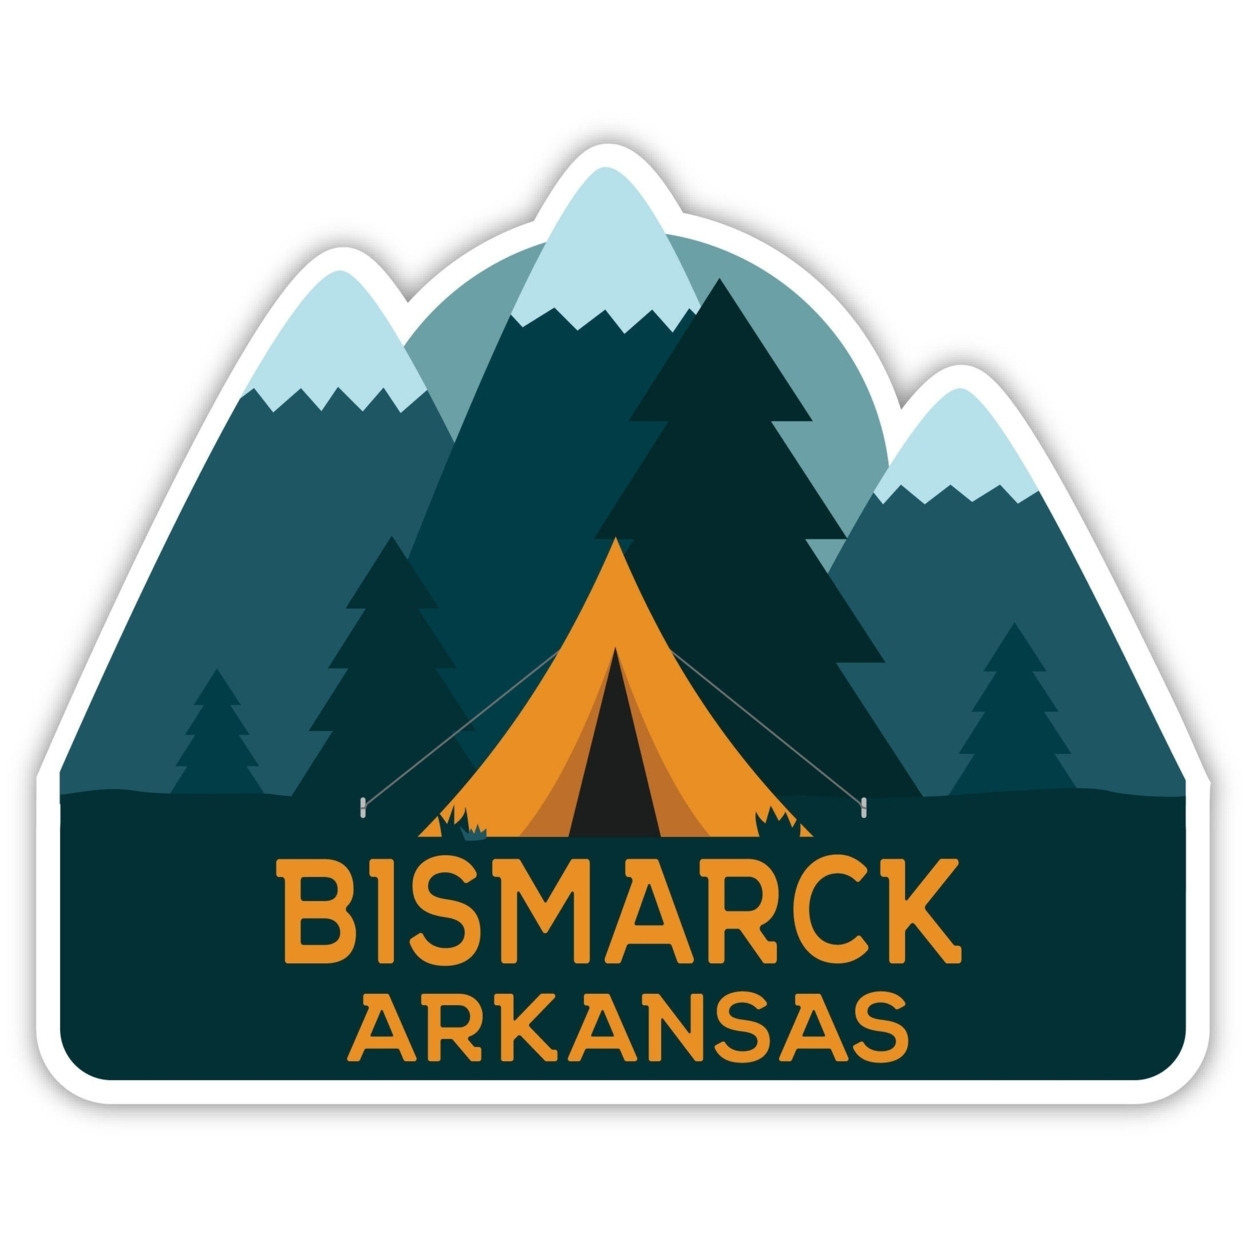 Bismarck Arkansas Souvenir Decorative Stickers (Choose Theme And Size) - Single Unit, 8-Inch, Tent